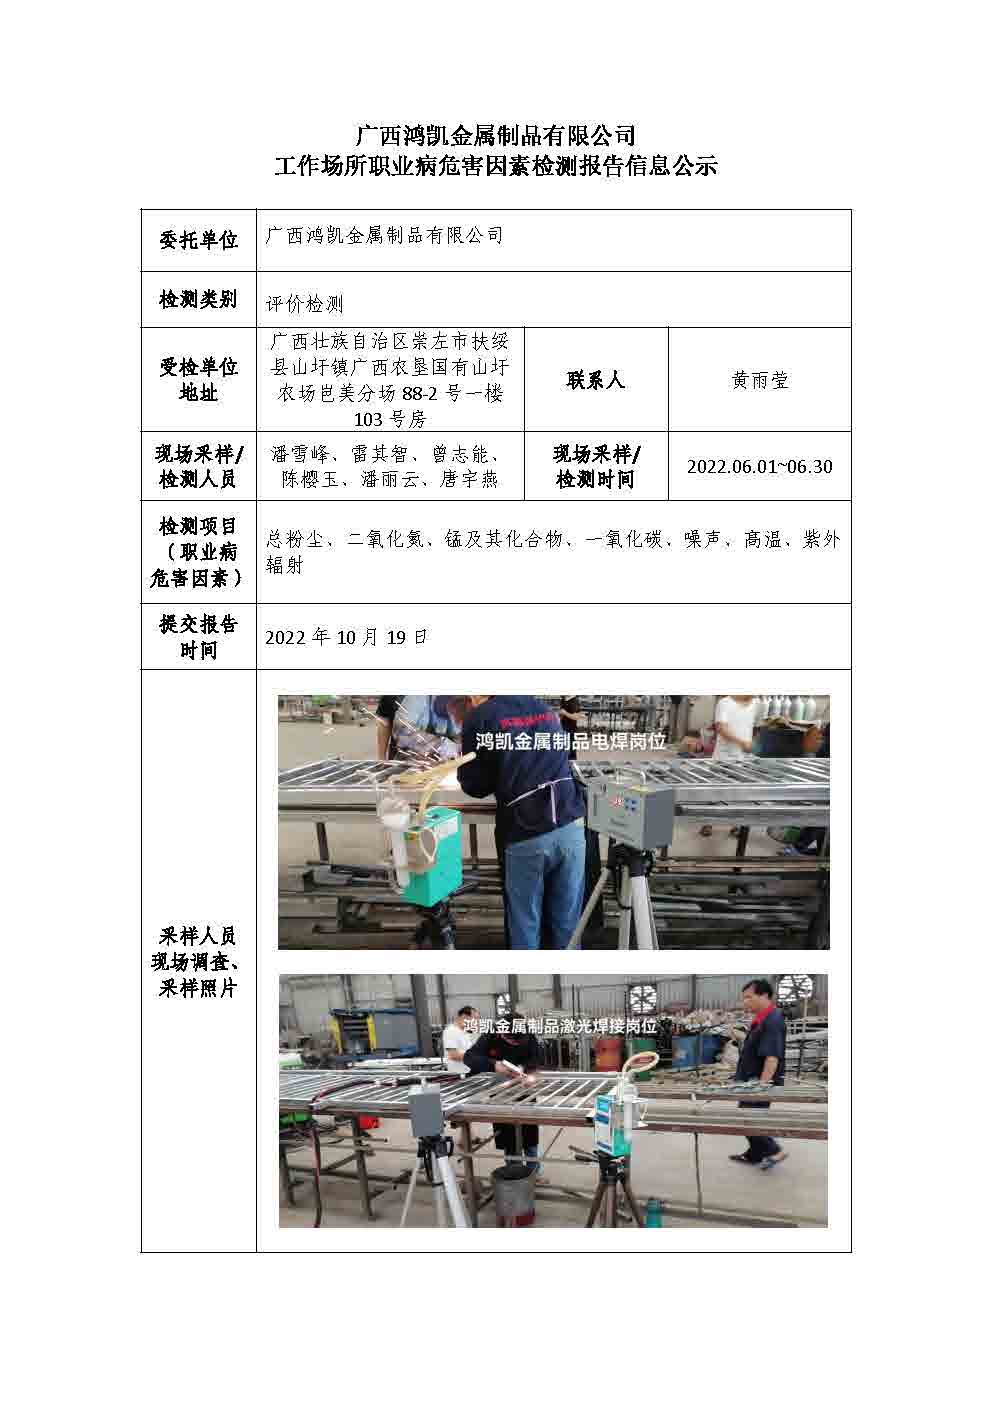 广西鸿凯金属制品有限公司工作场所职业病危害因素检测报告信息公示